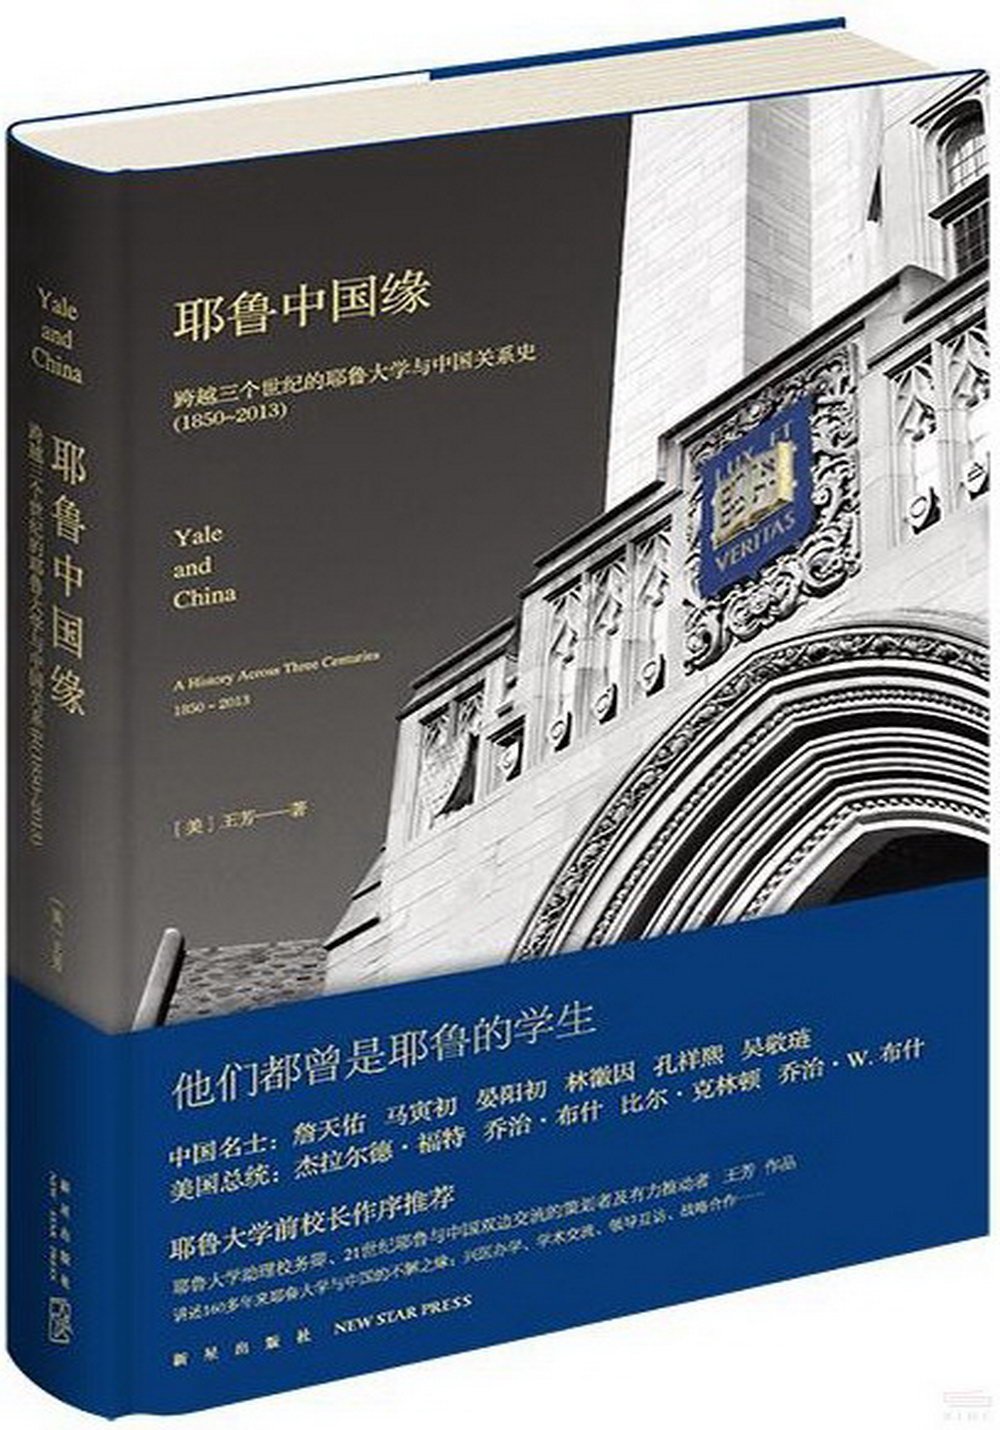 耶魯中國緣：跨越三個世紀的耶魯大學與中國關係史（1850-2013）